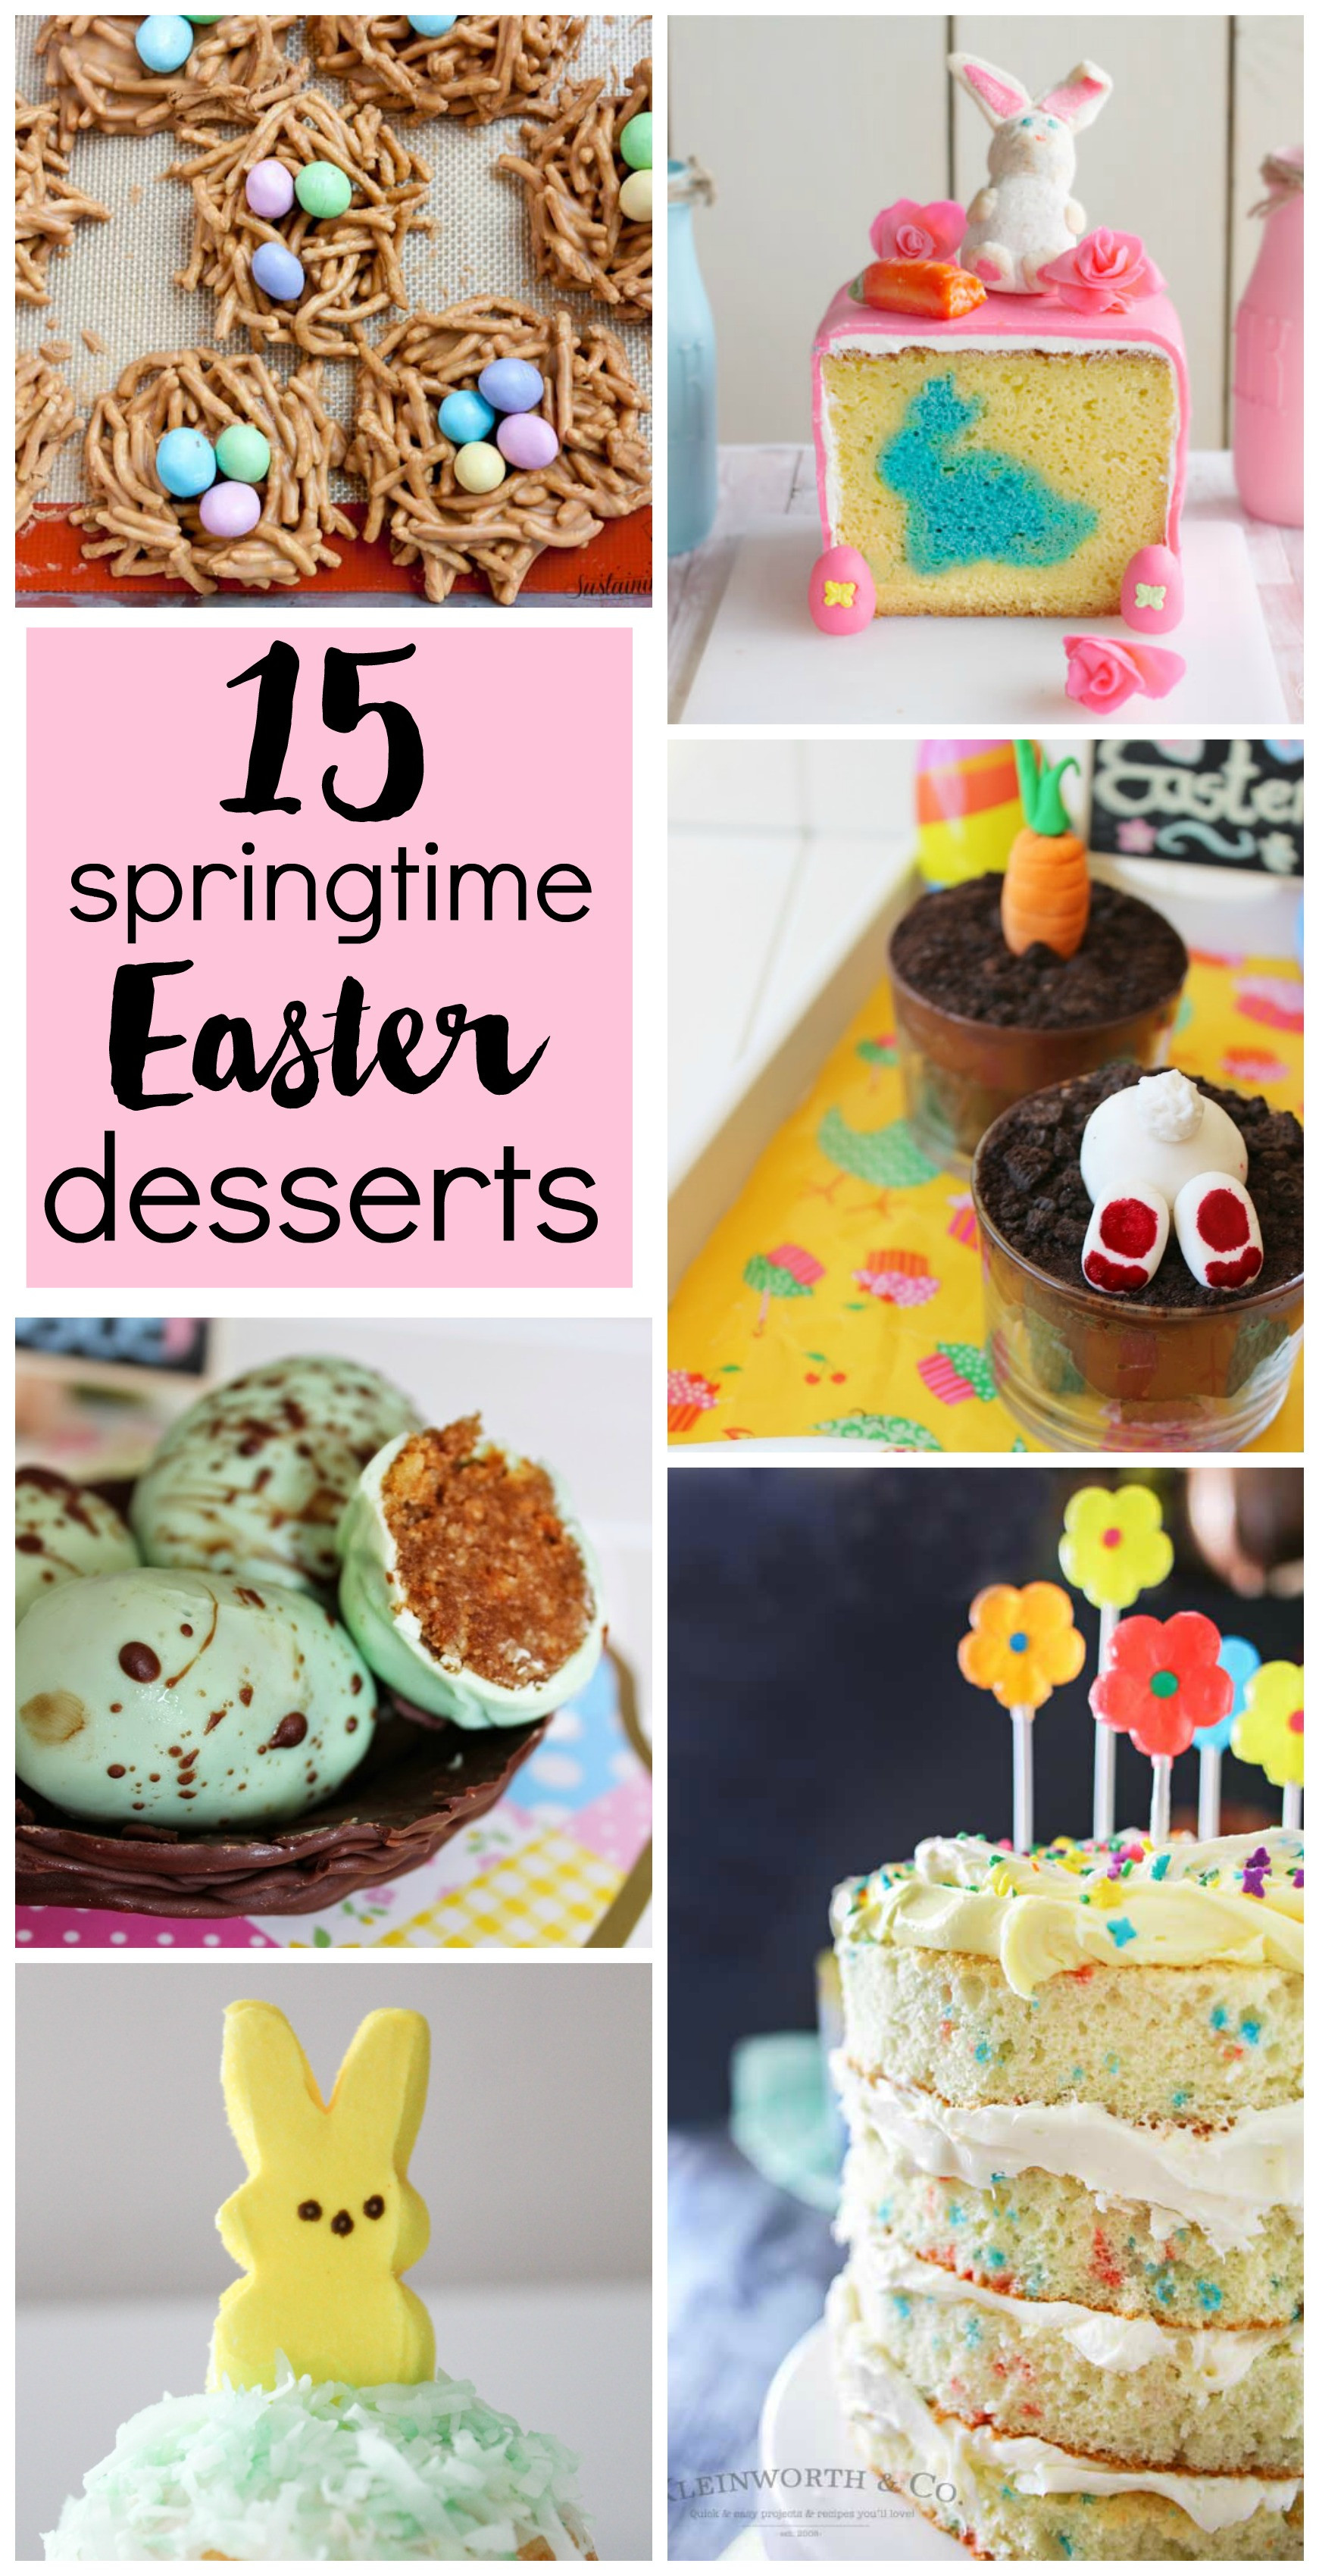 Pinterest Easter Desserts
 15 Springtime Easter Desserts